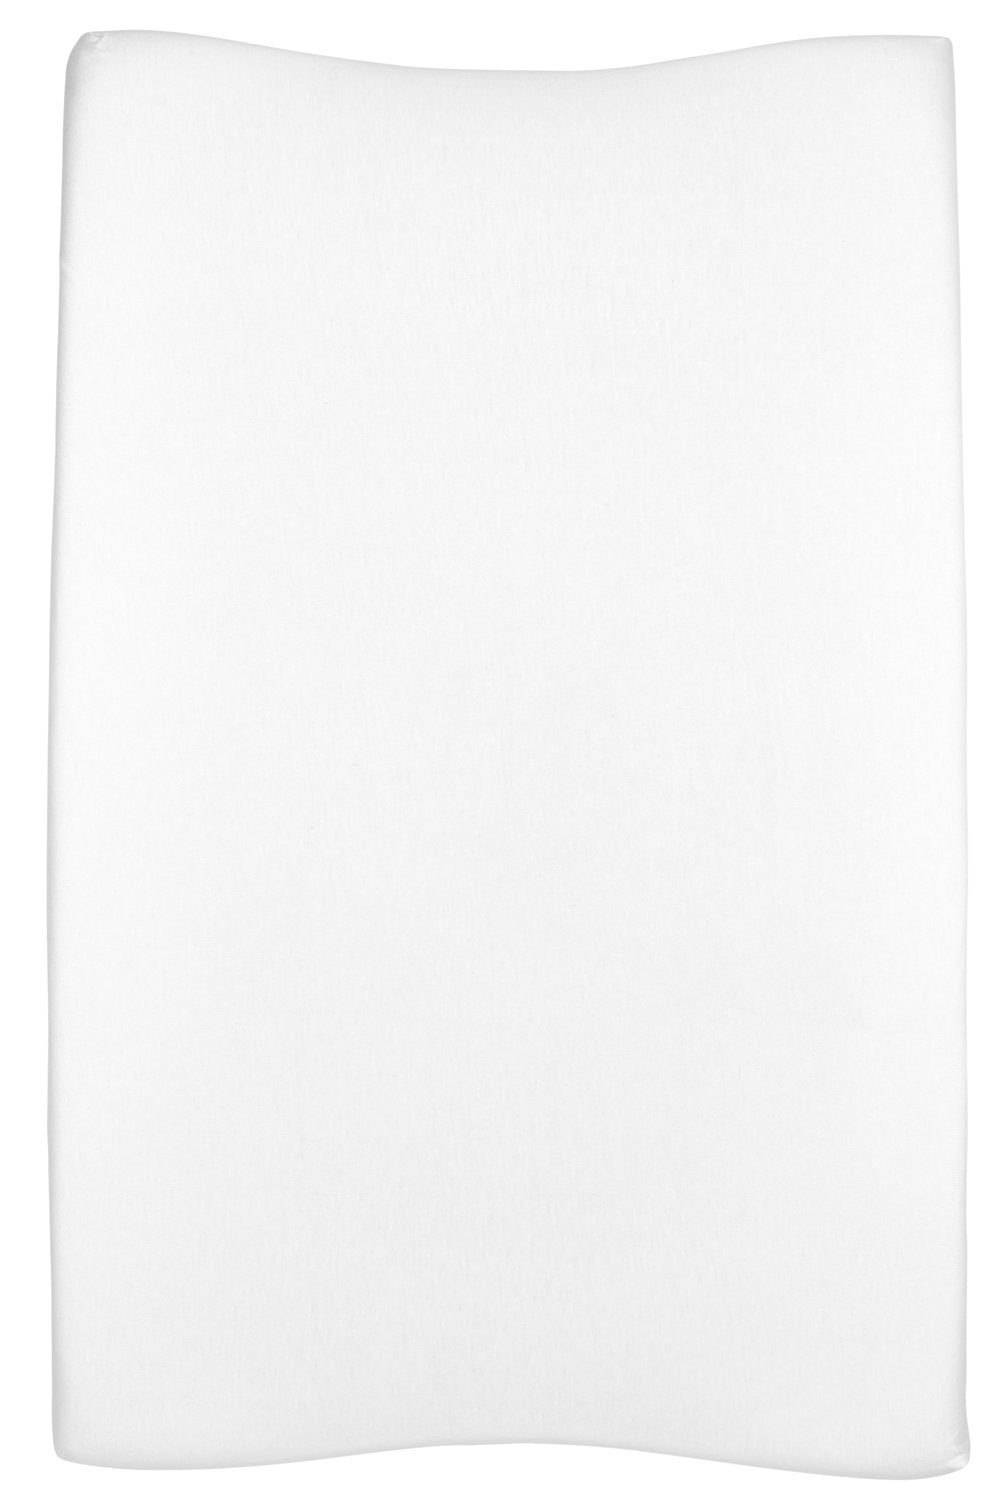 Baby Wickelauflagenbezug Uni White (1-tlg), Meyco 50x70cm